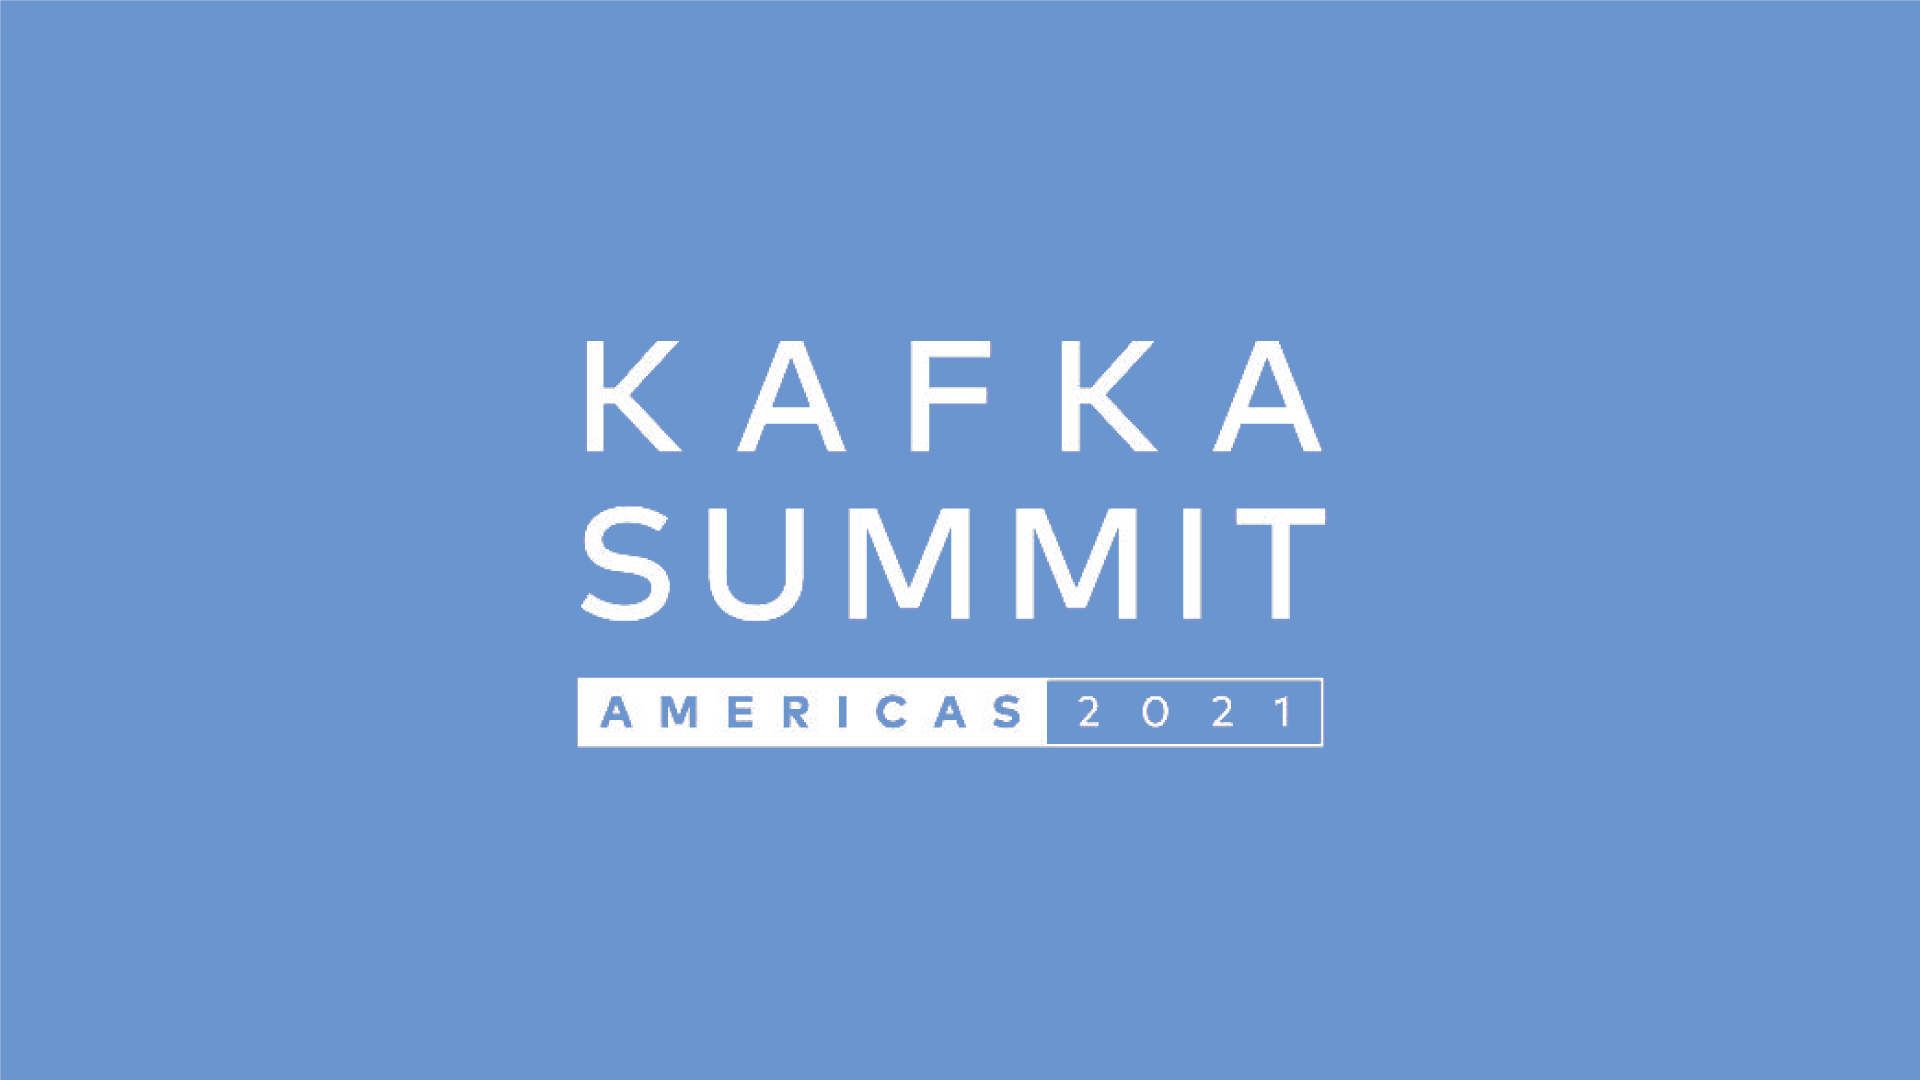 Kafka Summit Americas: 2021 Highlights